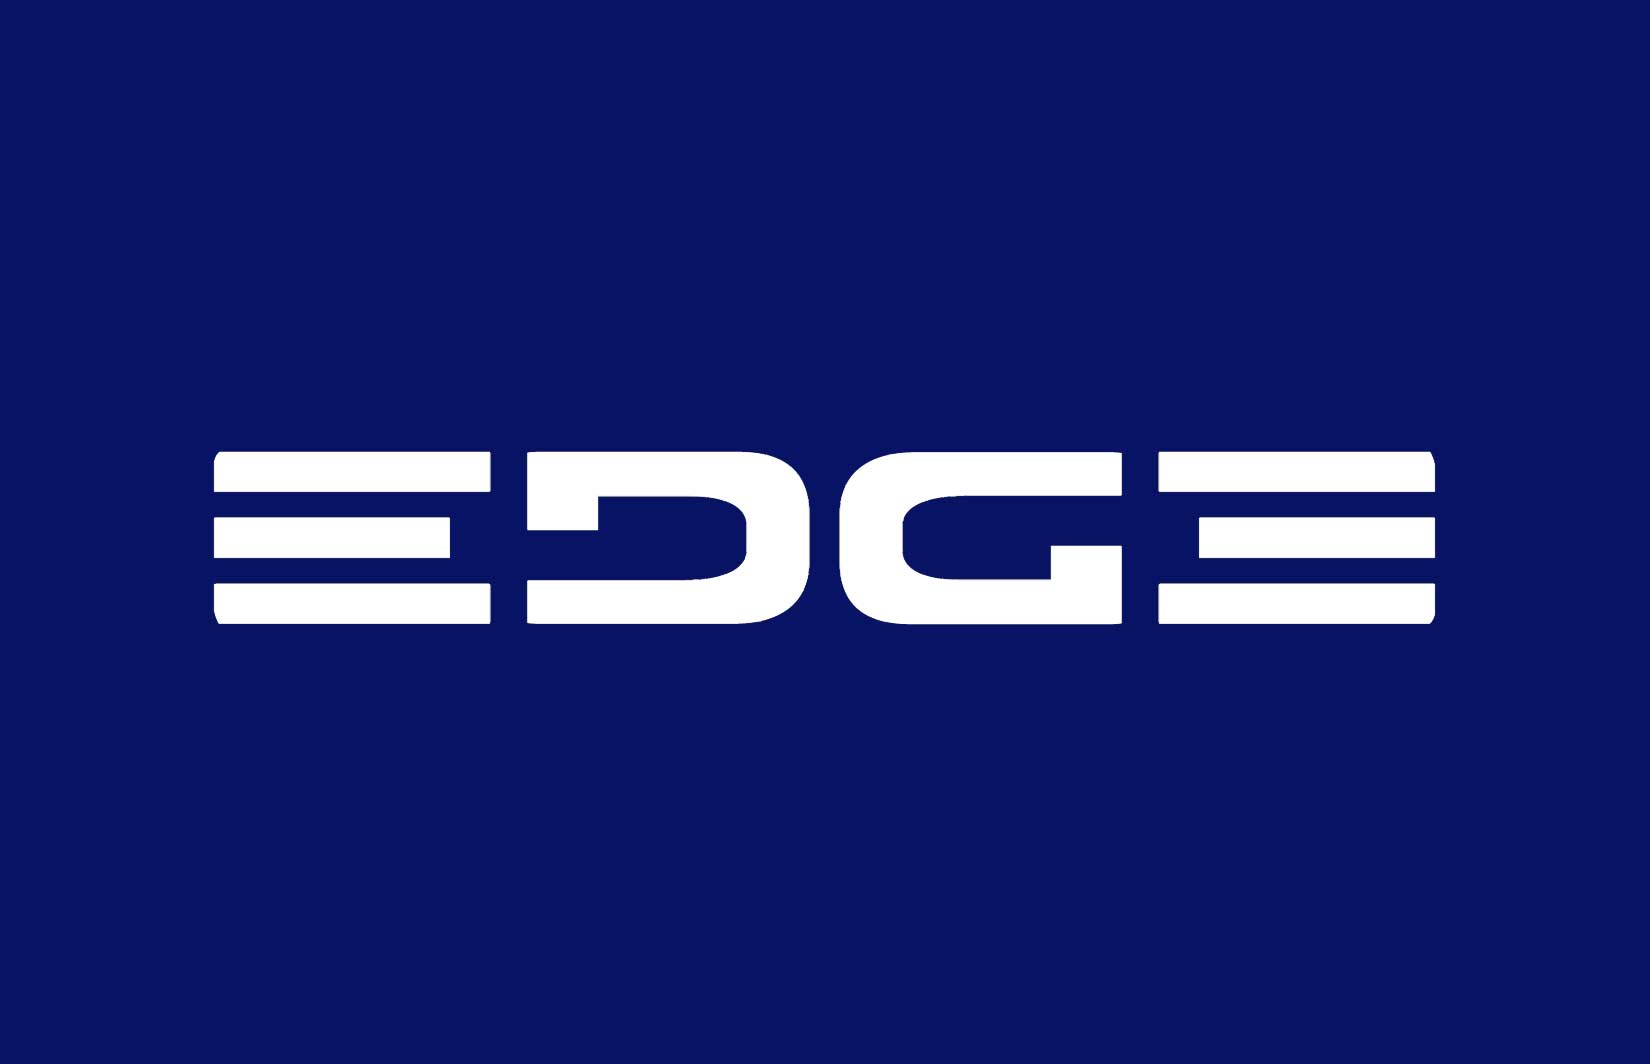 Original Ford Logo - Ford Edge Ambigram - Car Concept Logo Design